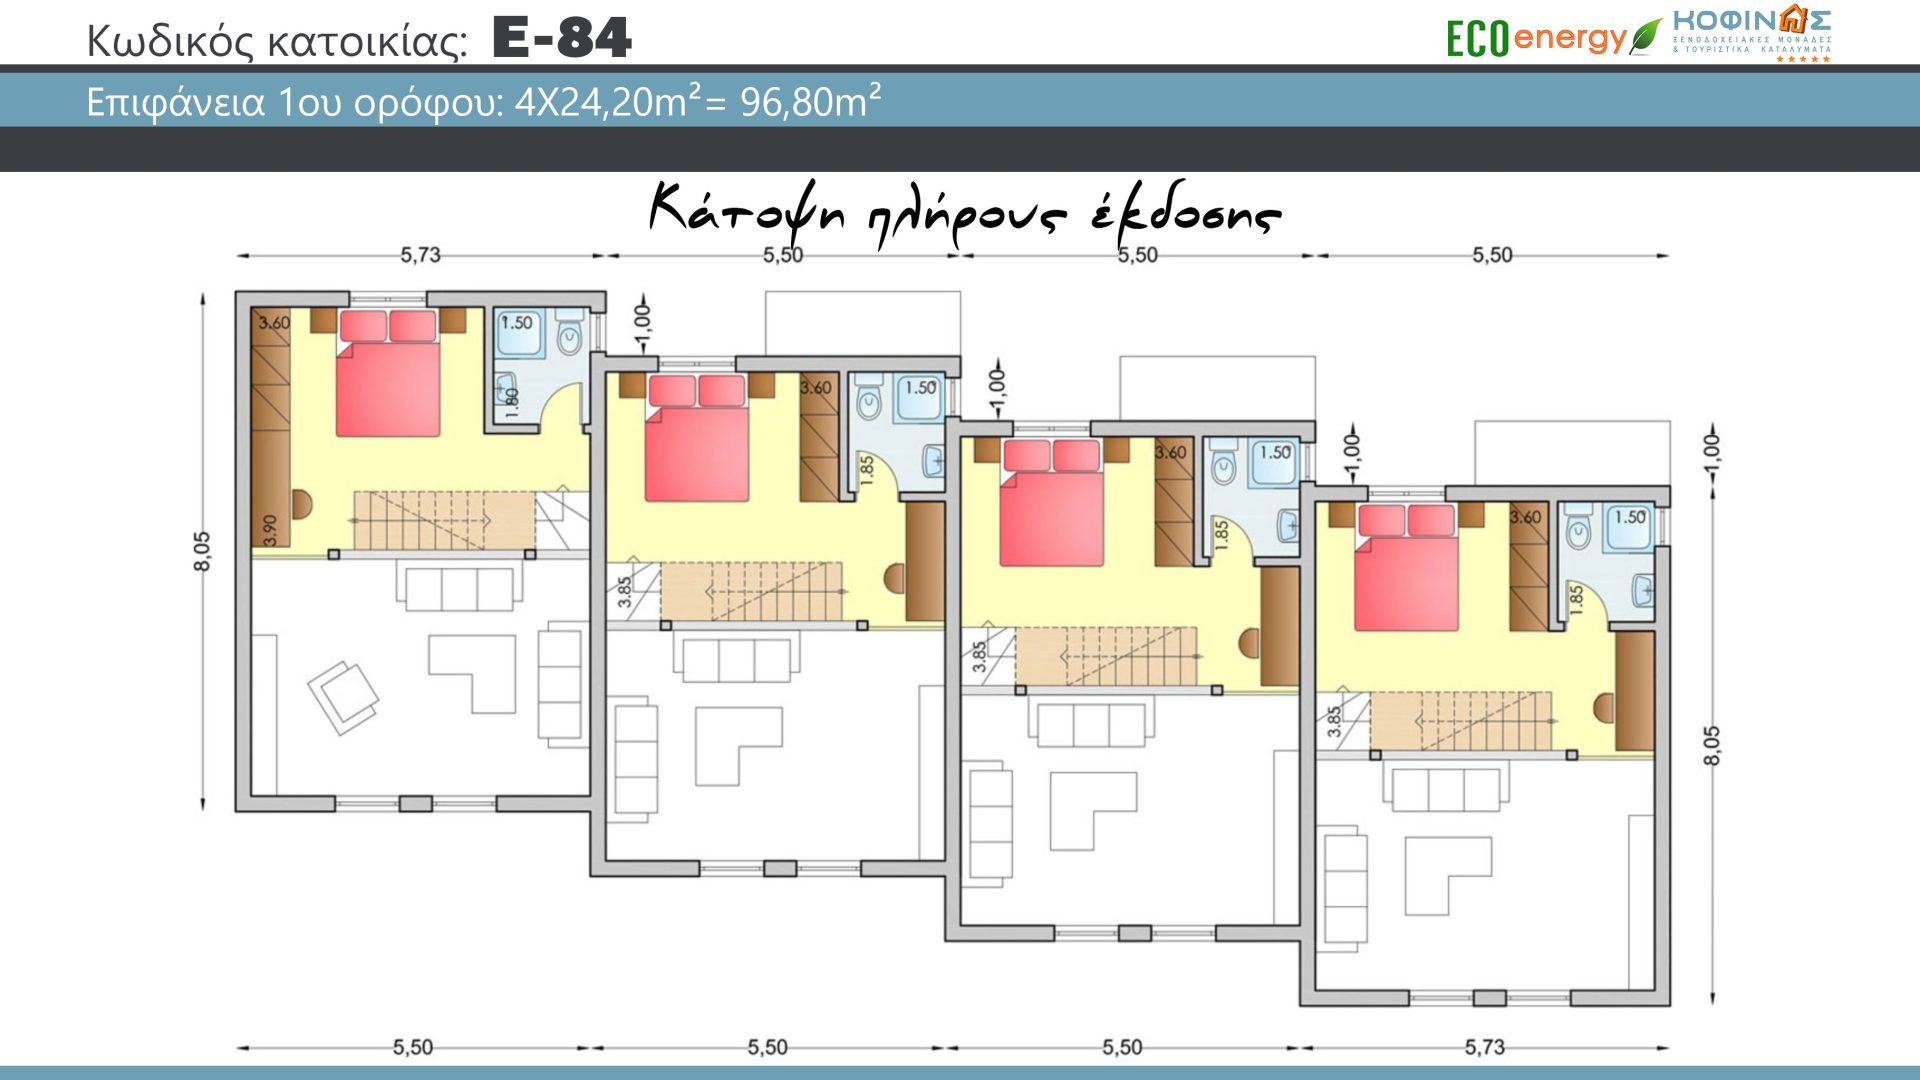 Συγκρότημα Κατοικιών E-84, συνολικής επιφάνειας 4 x 84,17 = 336,68 τ.μ., συνολική επιφάνεια στεγασμένων χώρων 43,36 τ.μ.